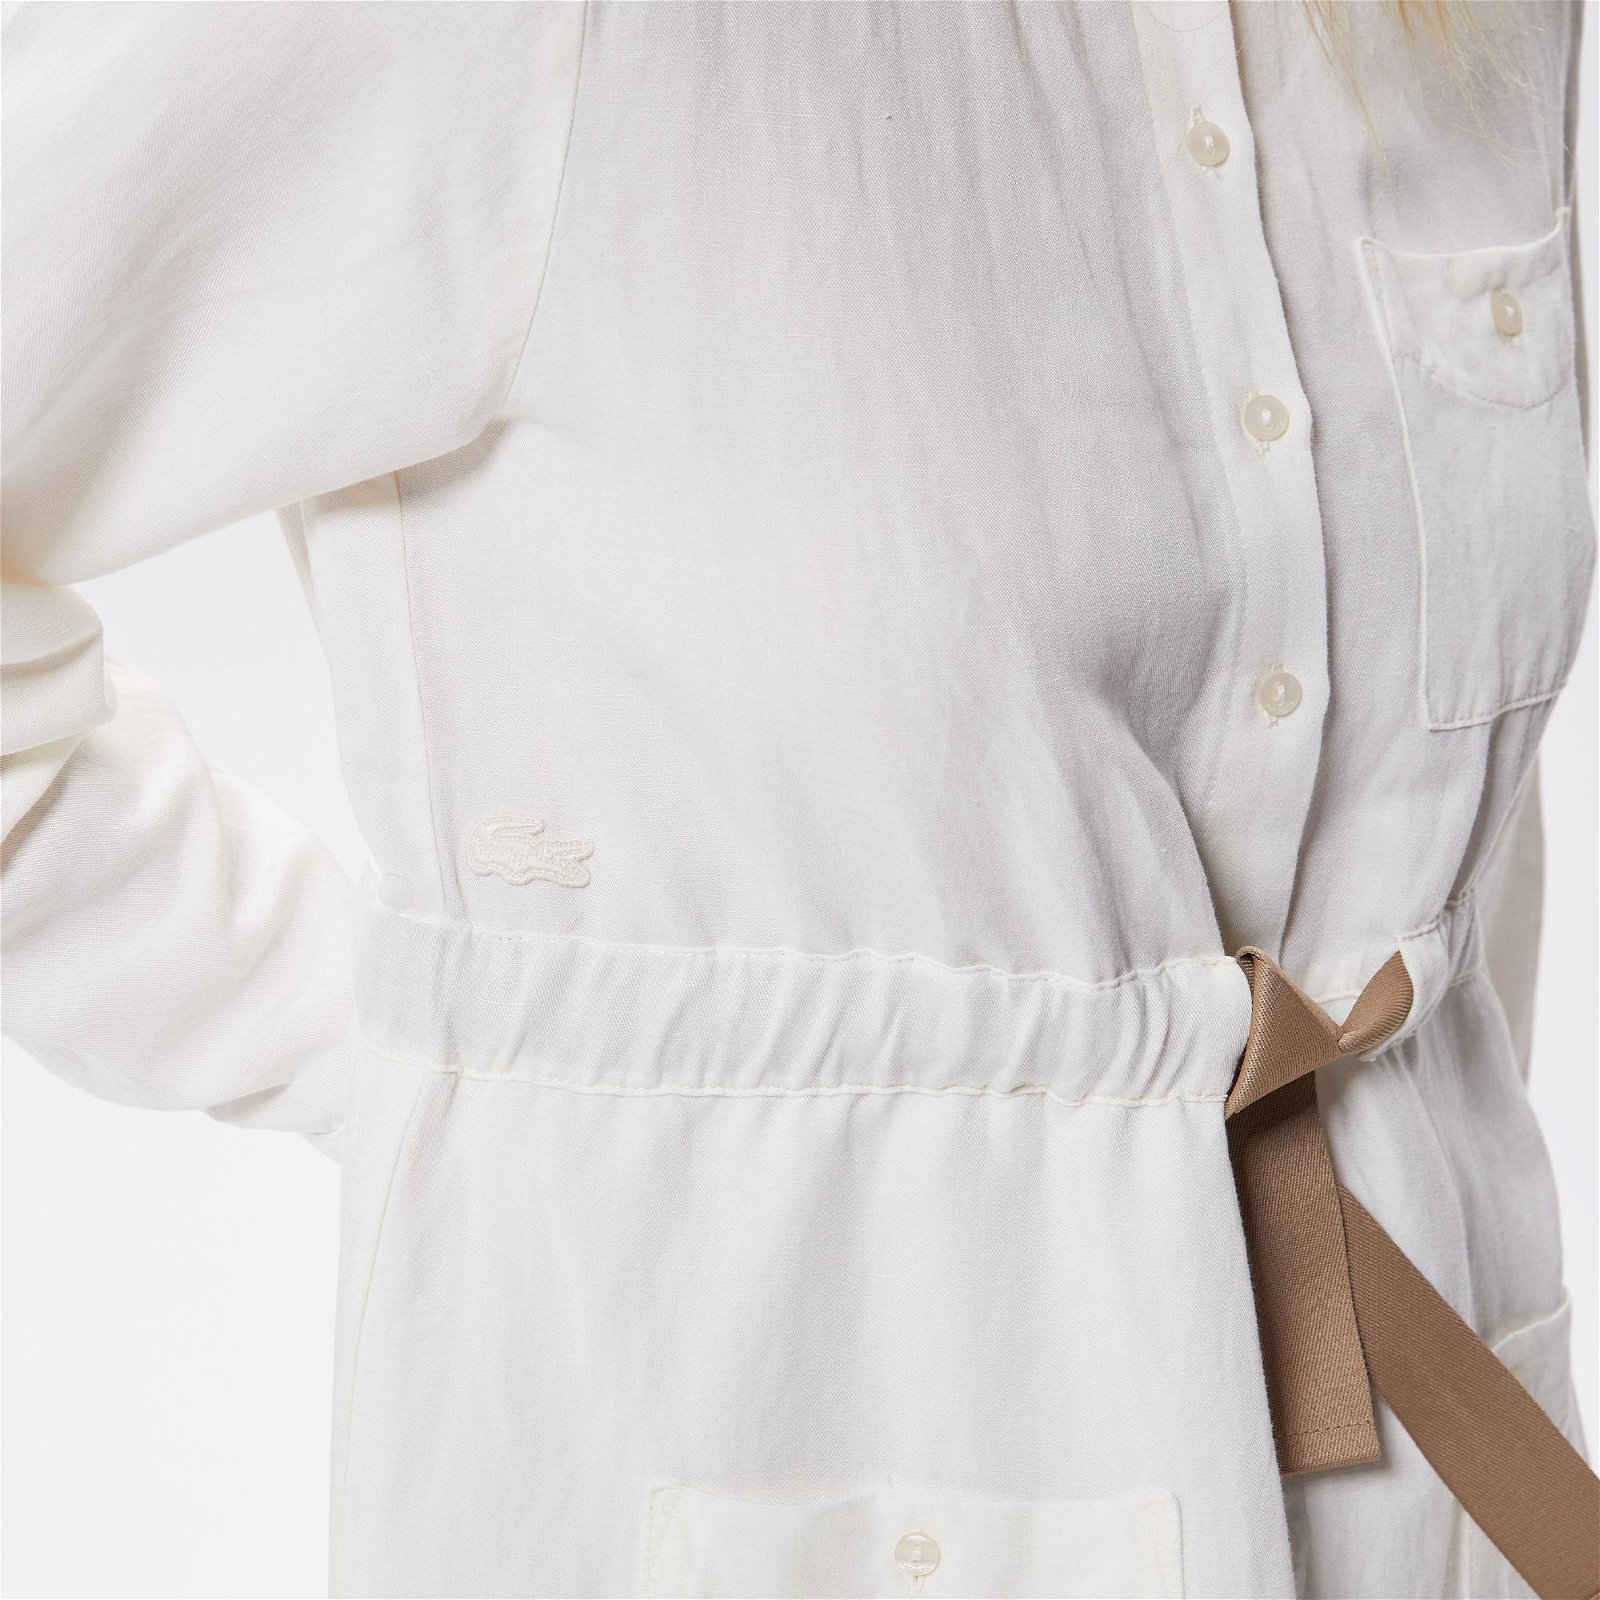 Lacoste Kadın Relaxed Fit Uzun Kollu Gömlek Yaka Beyaz Elbise